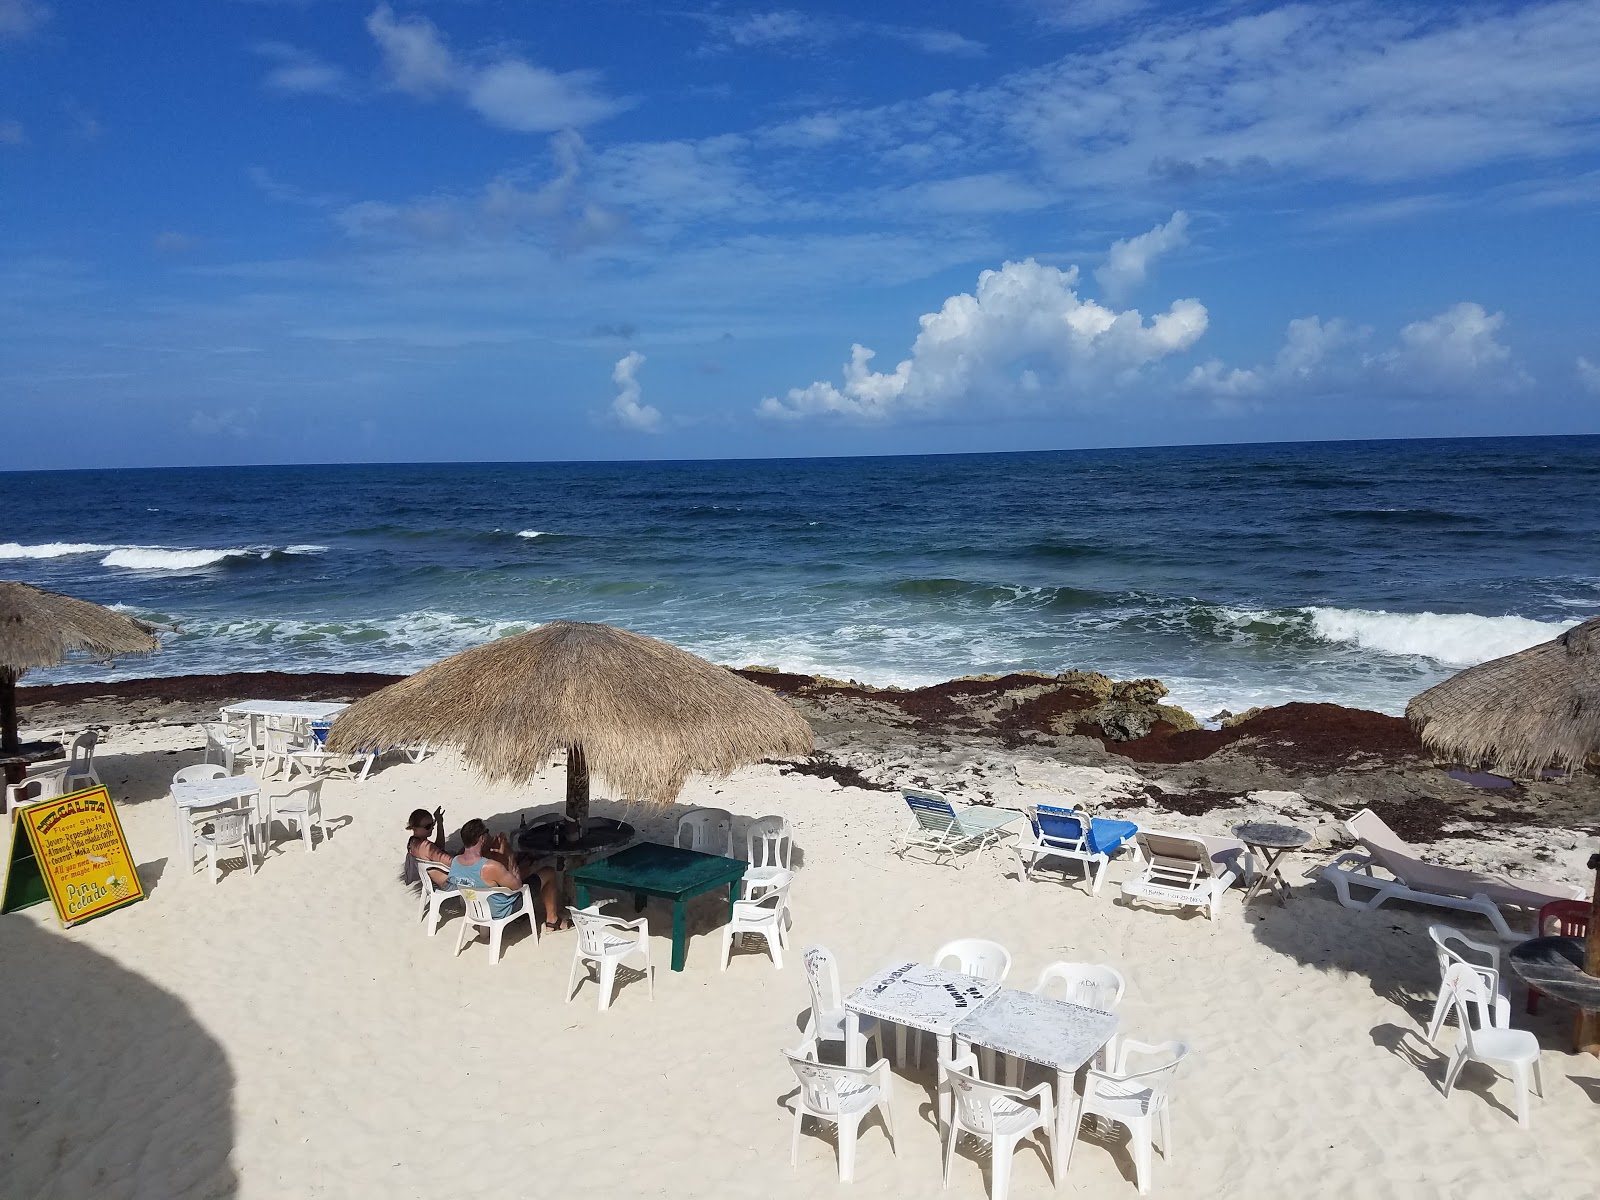 Foto di Playa Miami ubicato in zona naturale